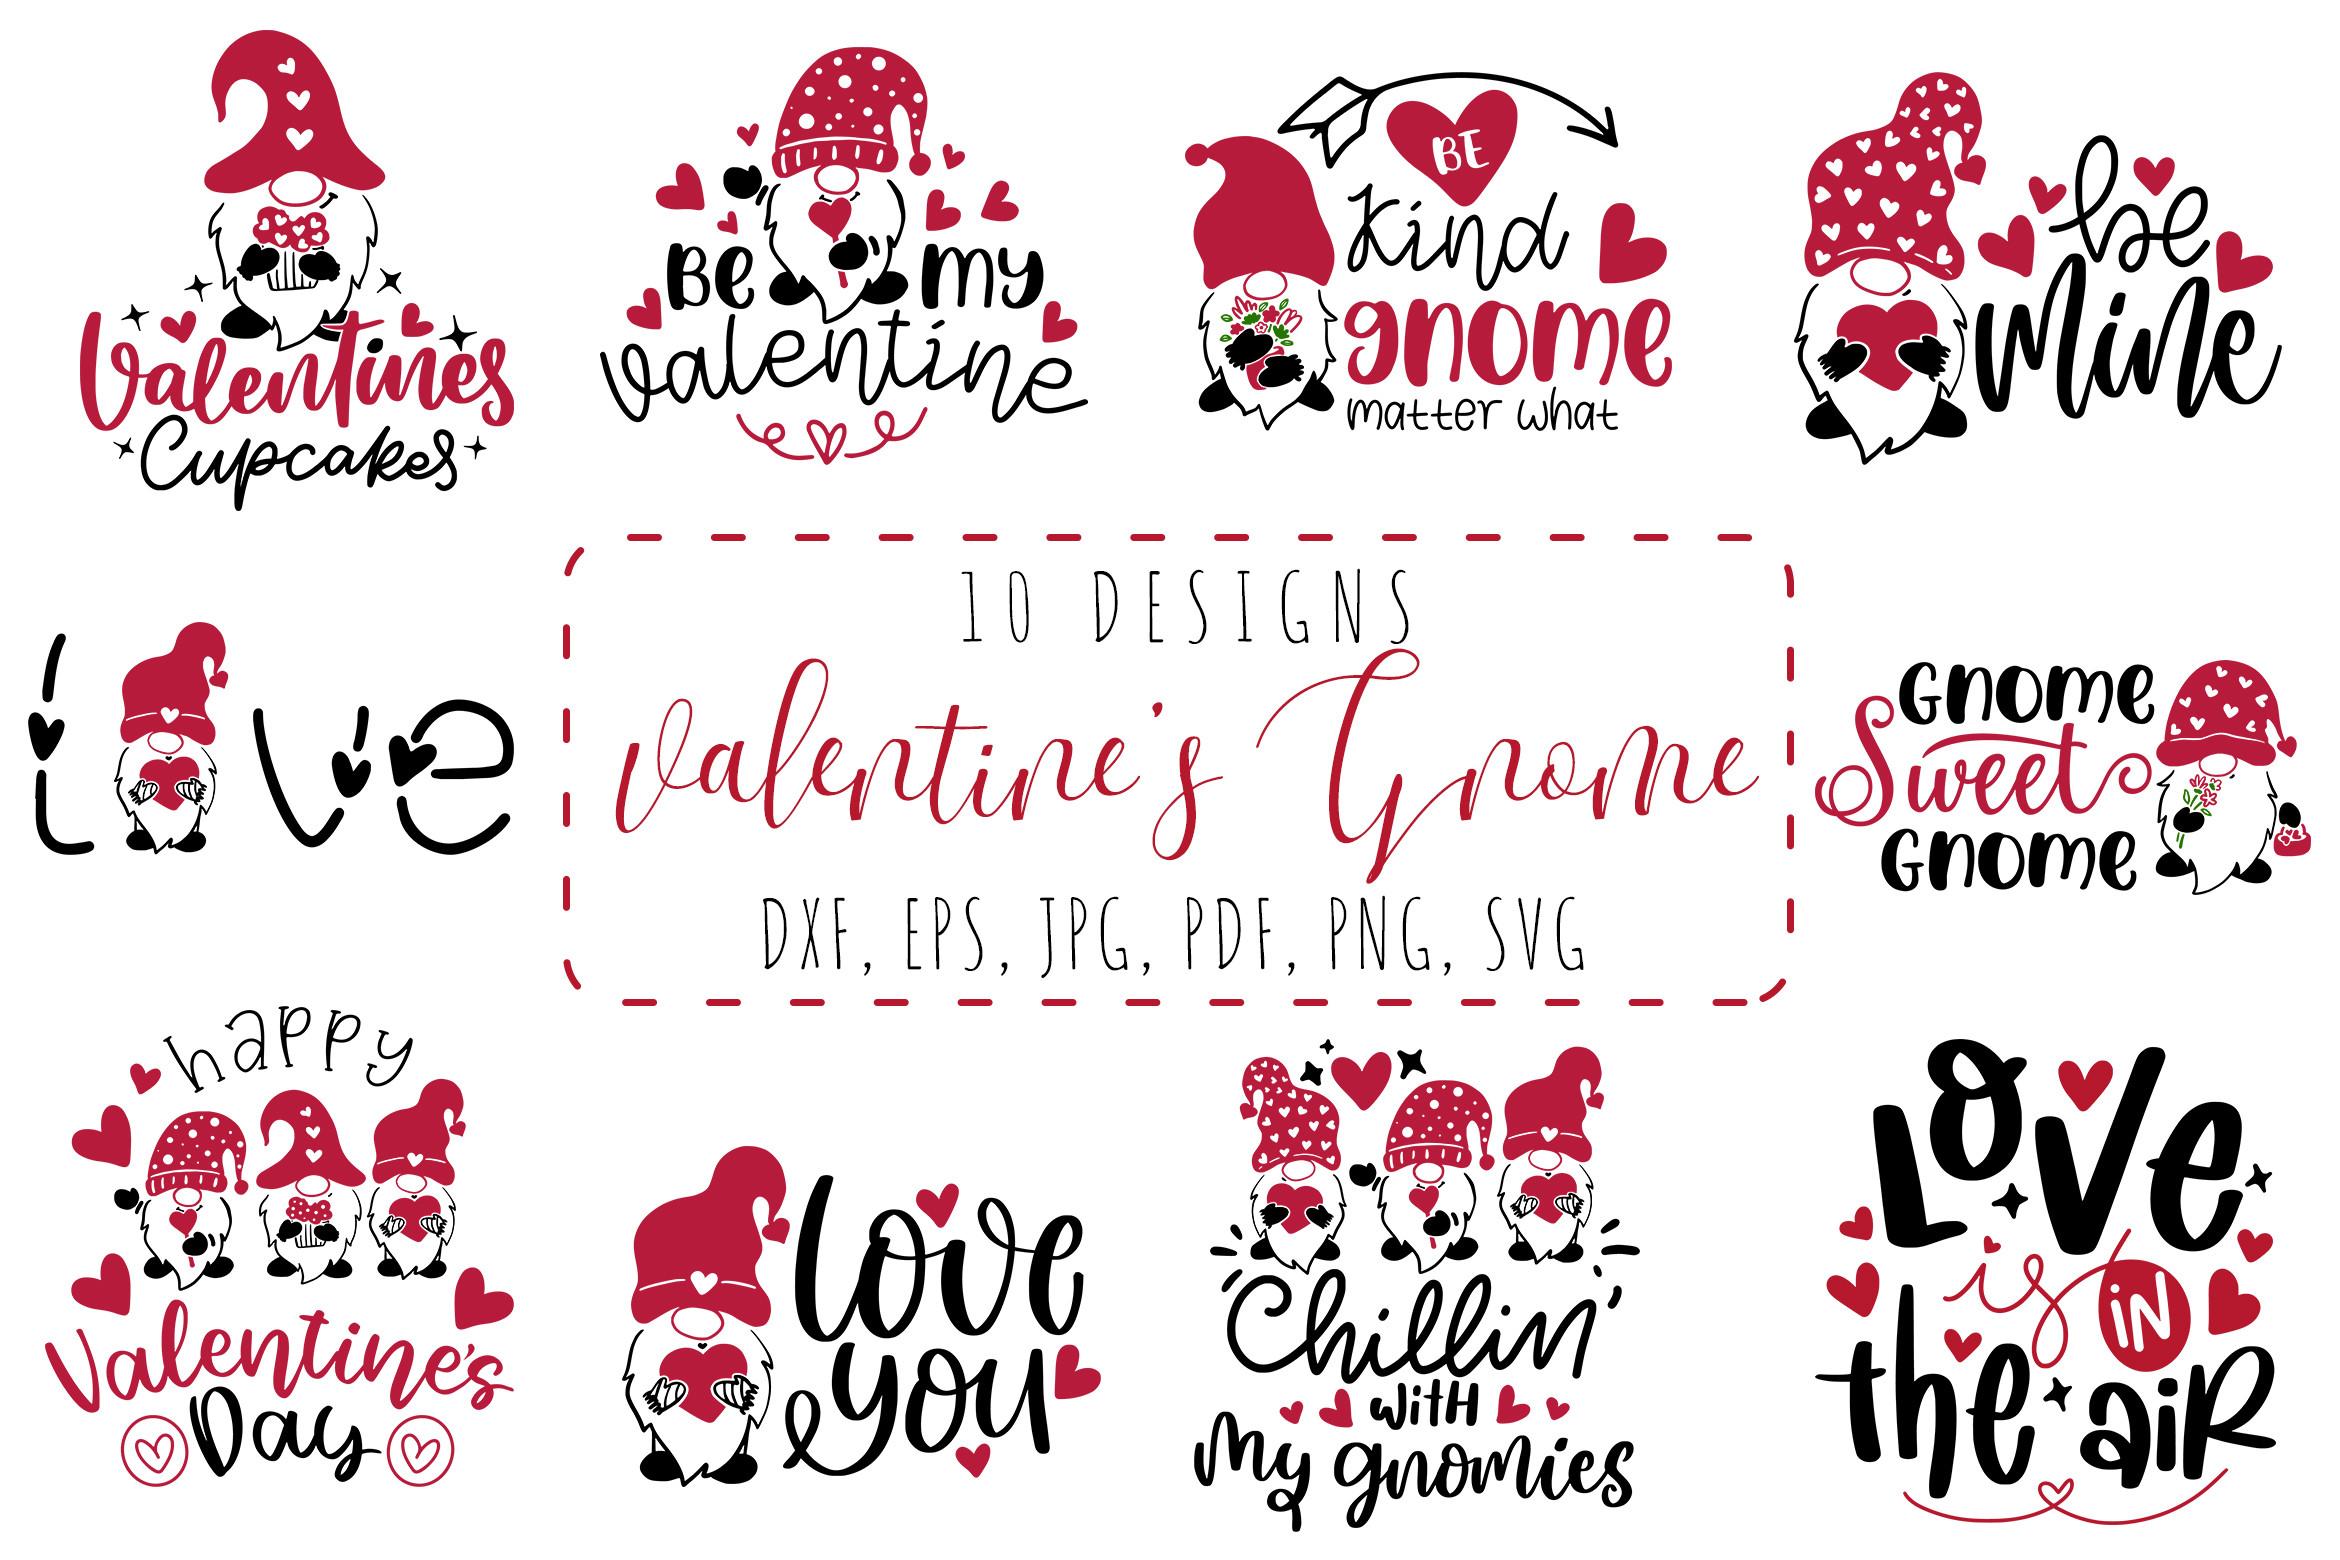 Valentine's Day Gnome SVG Bundle